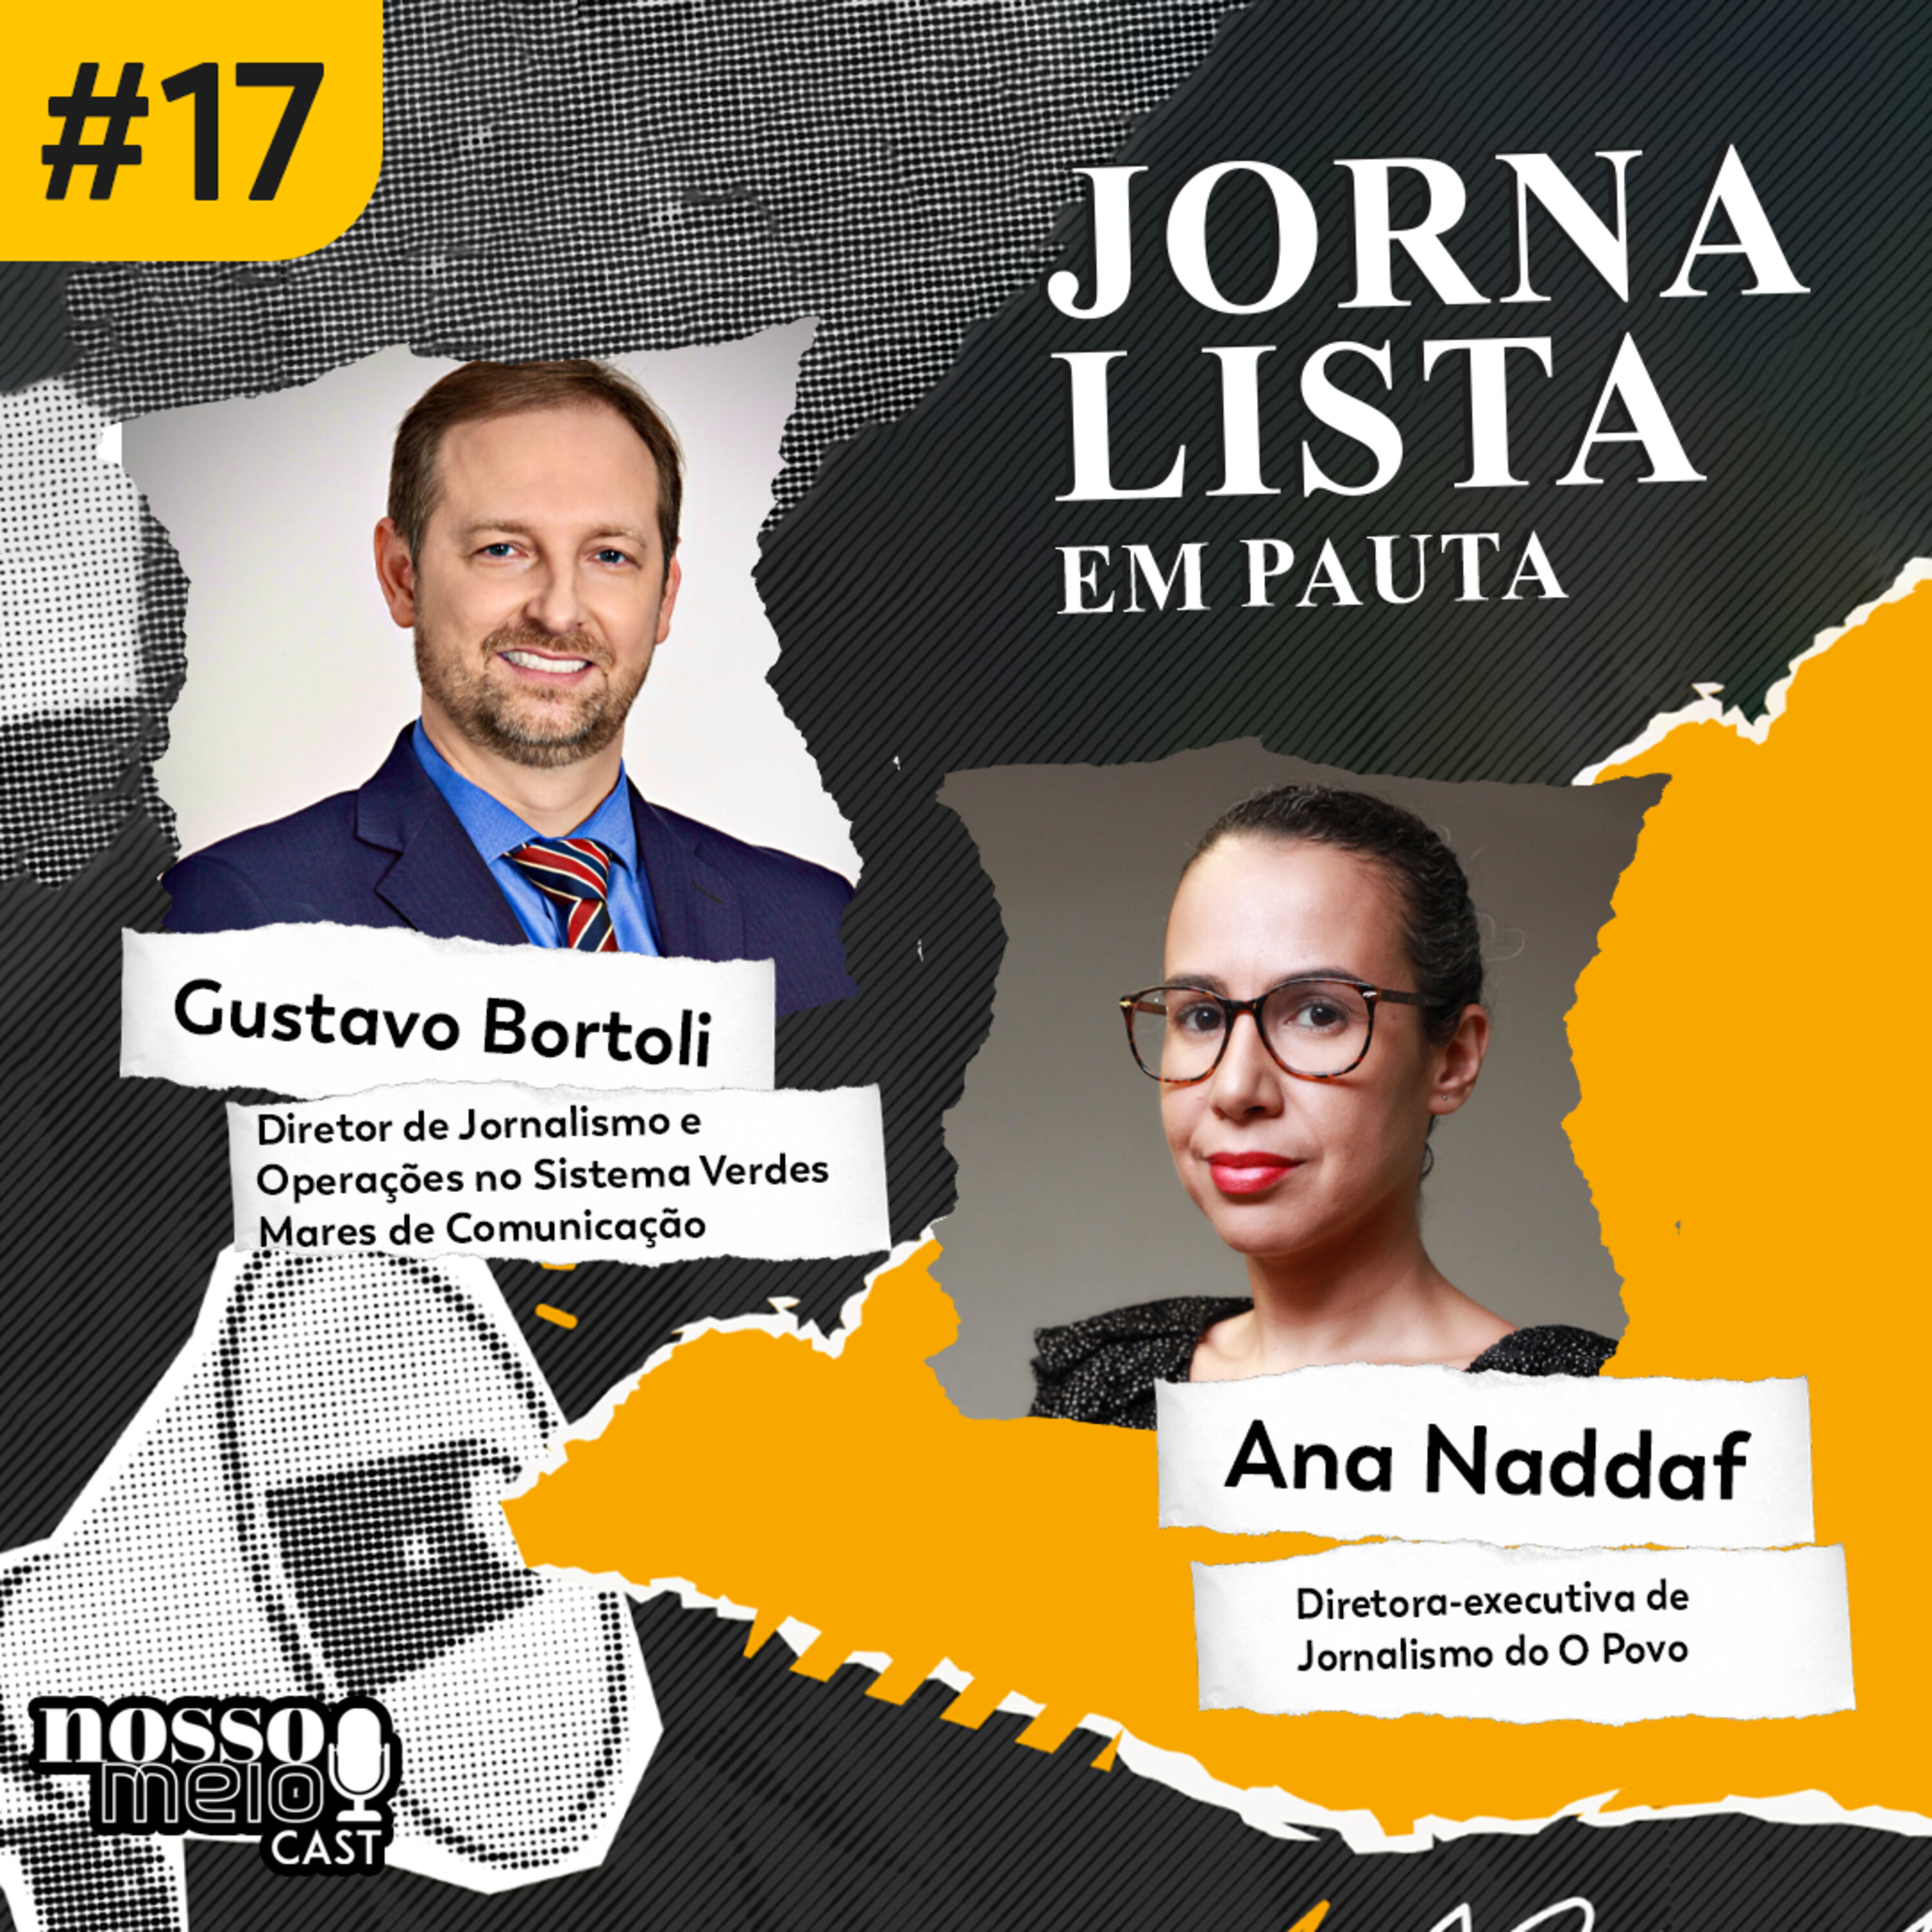 Nosso Meio Cast #17 - Jornalista em Pauta: Quem dirige o jornalismo cearense?